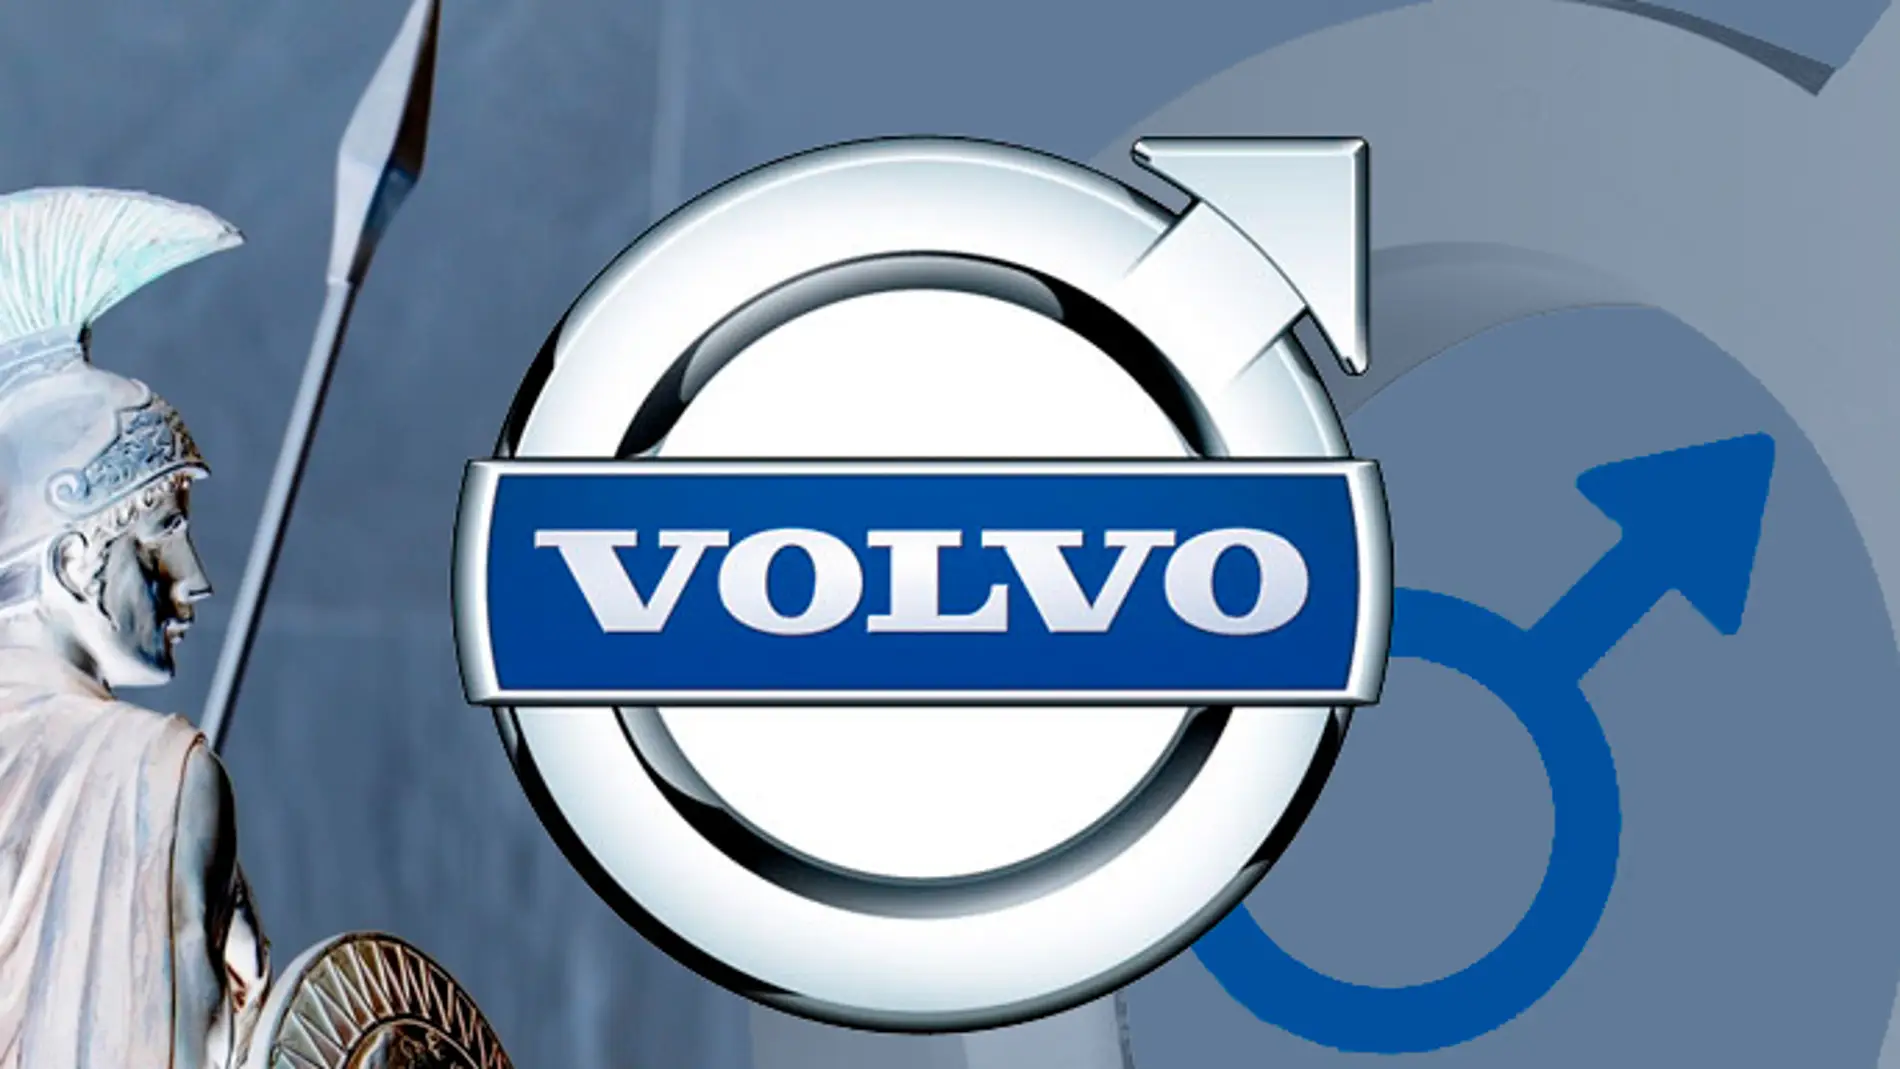 Qué esconden los logos? La polémica de Volvo y otros casos curiosos